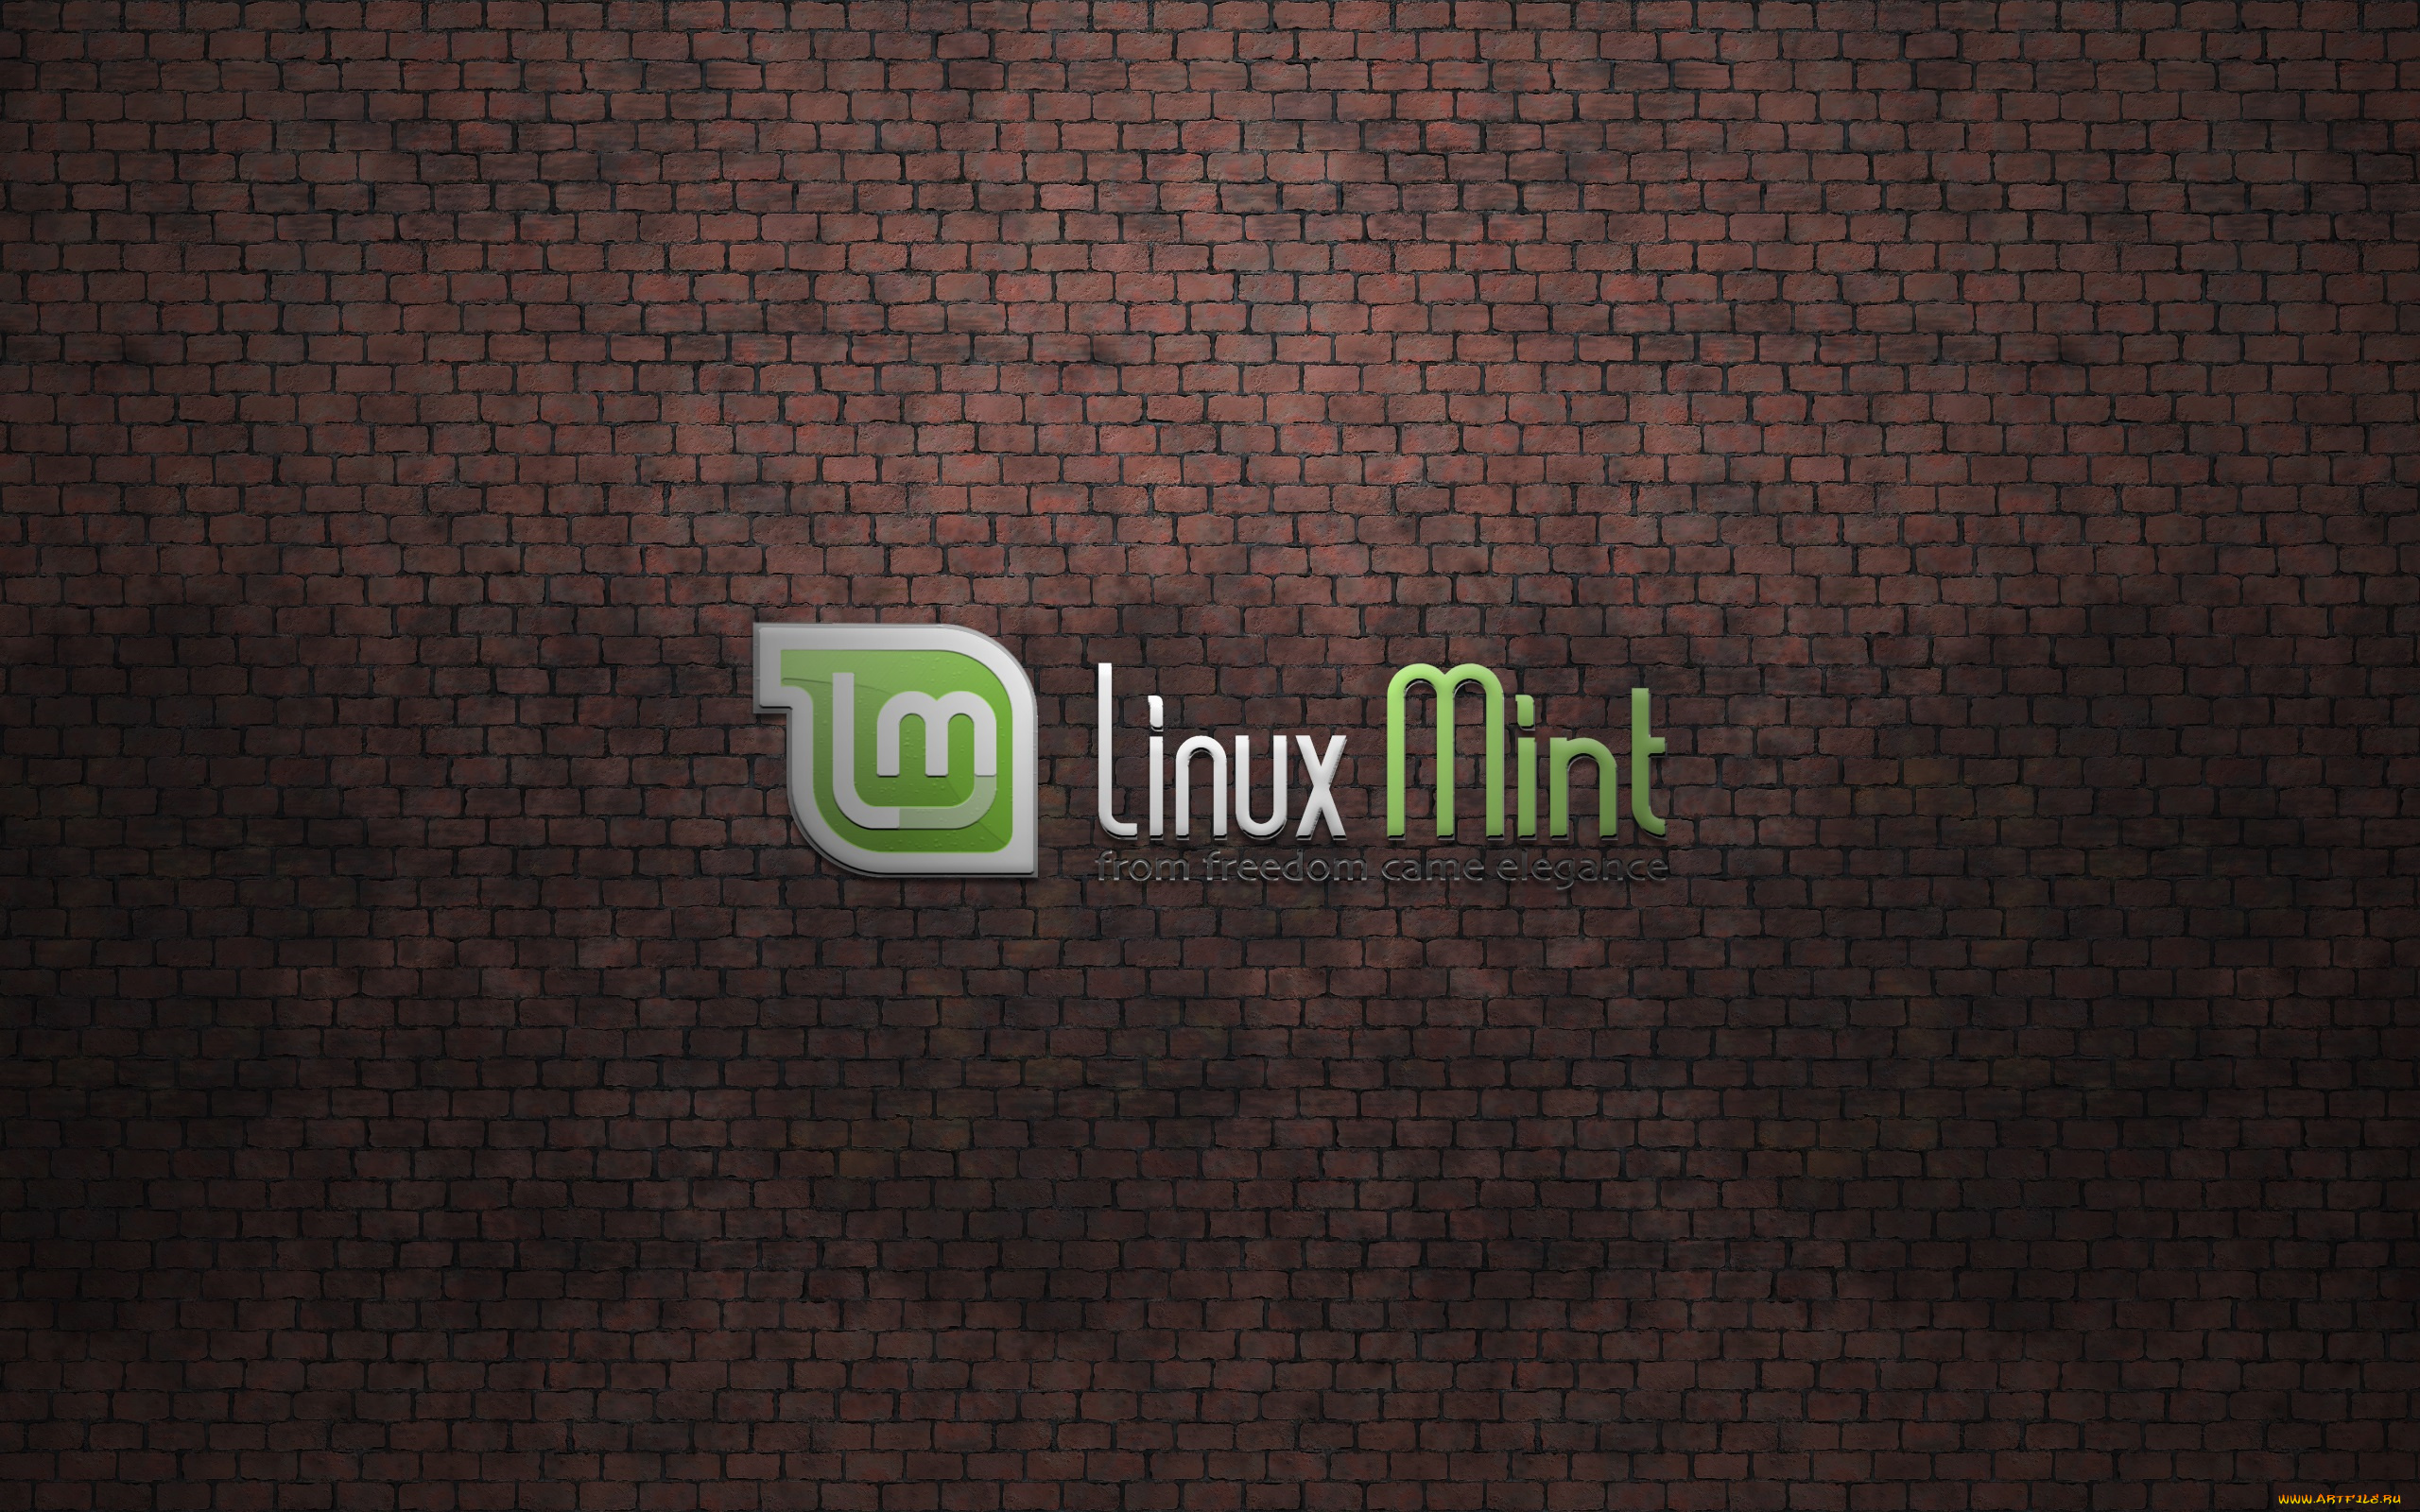 компьютеры, linux, графика, фон, стена, операционная, система, mint, линукс, минт, логотип, кирпичи, высокие, технологии